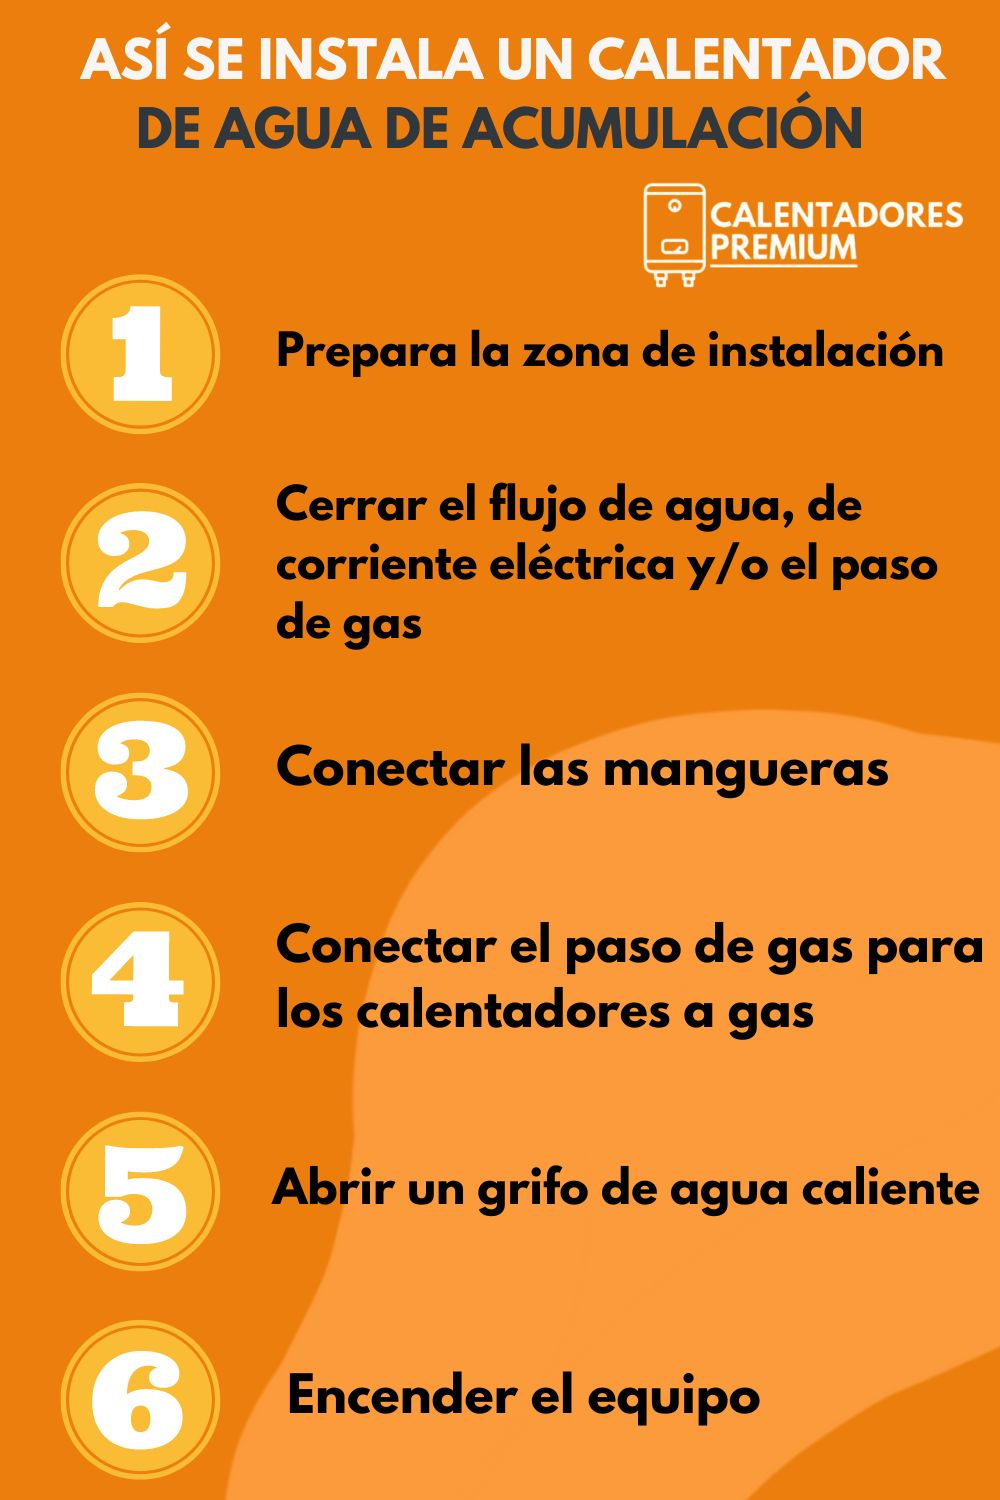            asi-se-instala-un-calentador–de-agua-de-acumulacion-calentadorespremium-colombia-calentadores-premium-01  